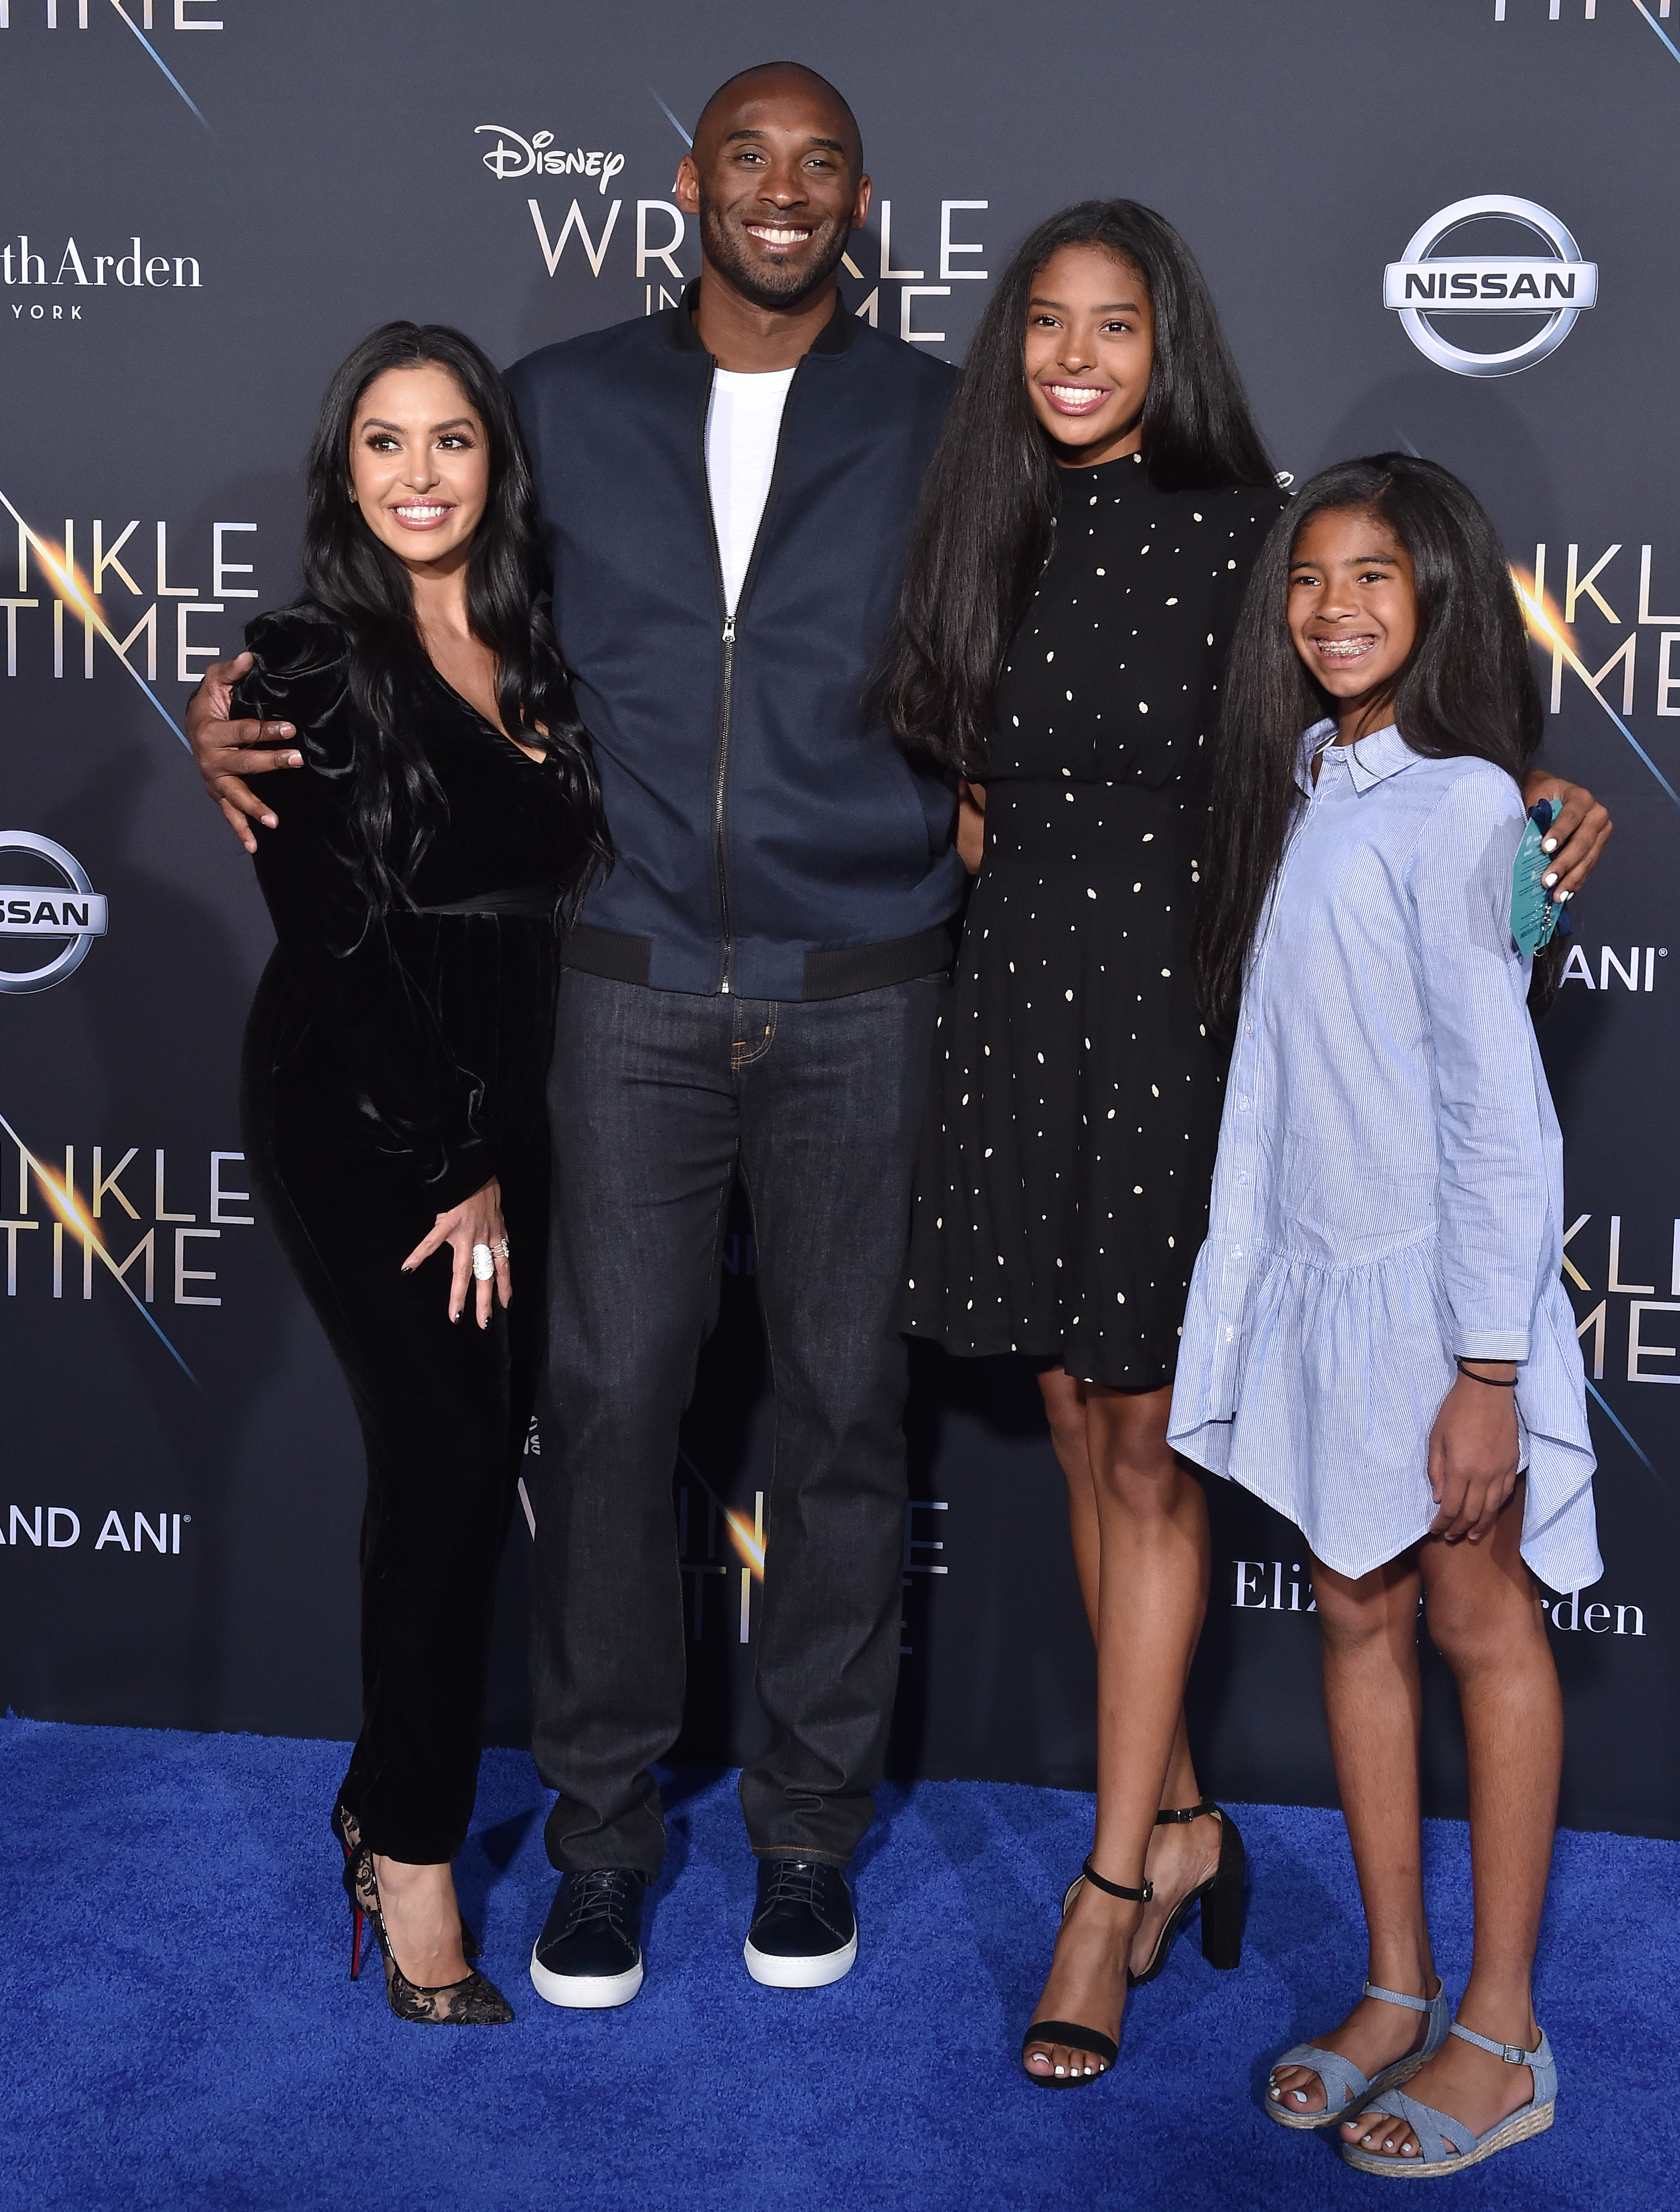 Vanessa Bryant, Kobe Bryant, Natalia Bryant und Gianna Bryant bei der Premiere von "A Wrinkle In Time", 2018 | Quelle: Getty Images